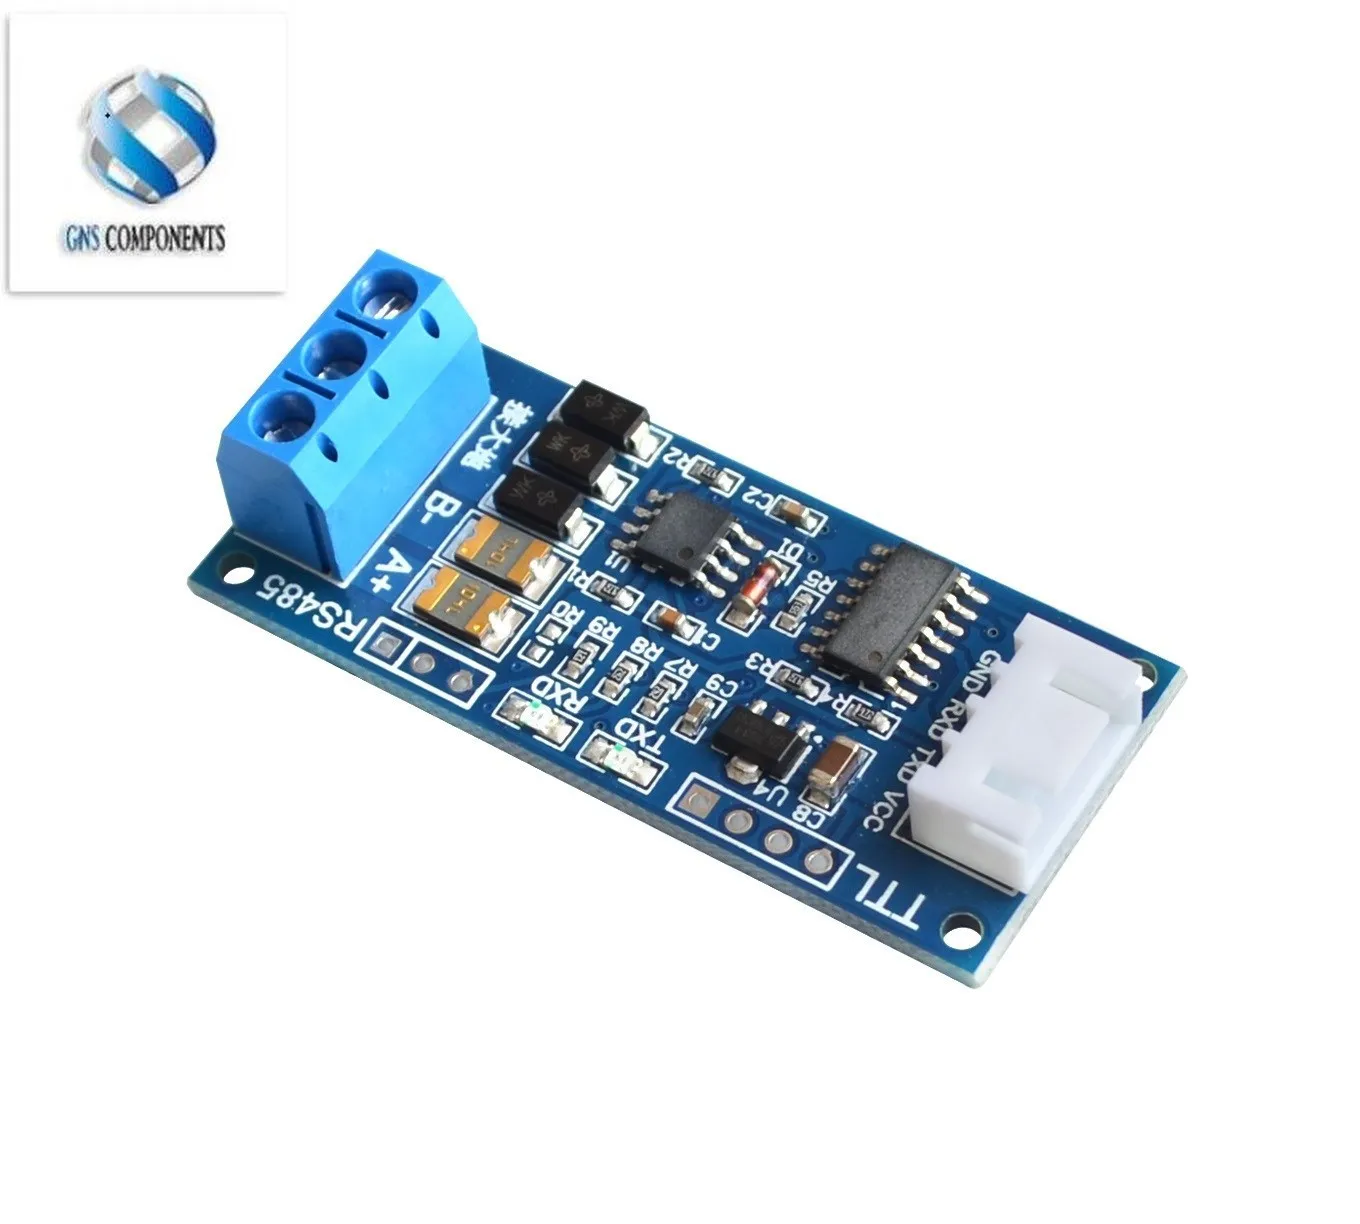 TTL para Conversor RS485 3,3 V/5.0 V Hardware de Controlo Automático do Módulo Conversor Para o Arduino para Arduino, AVR